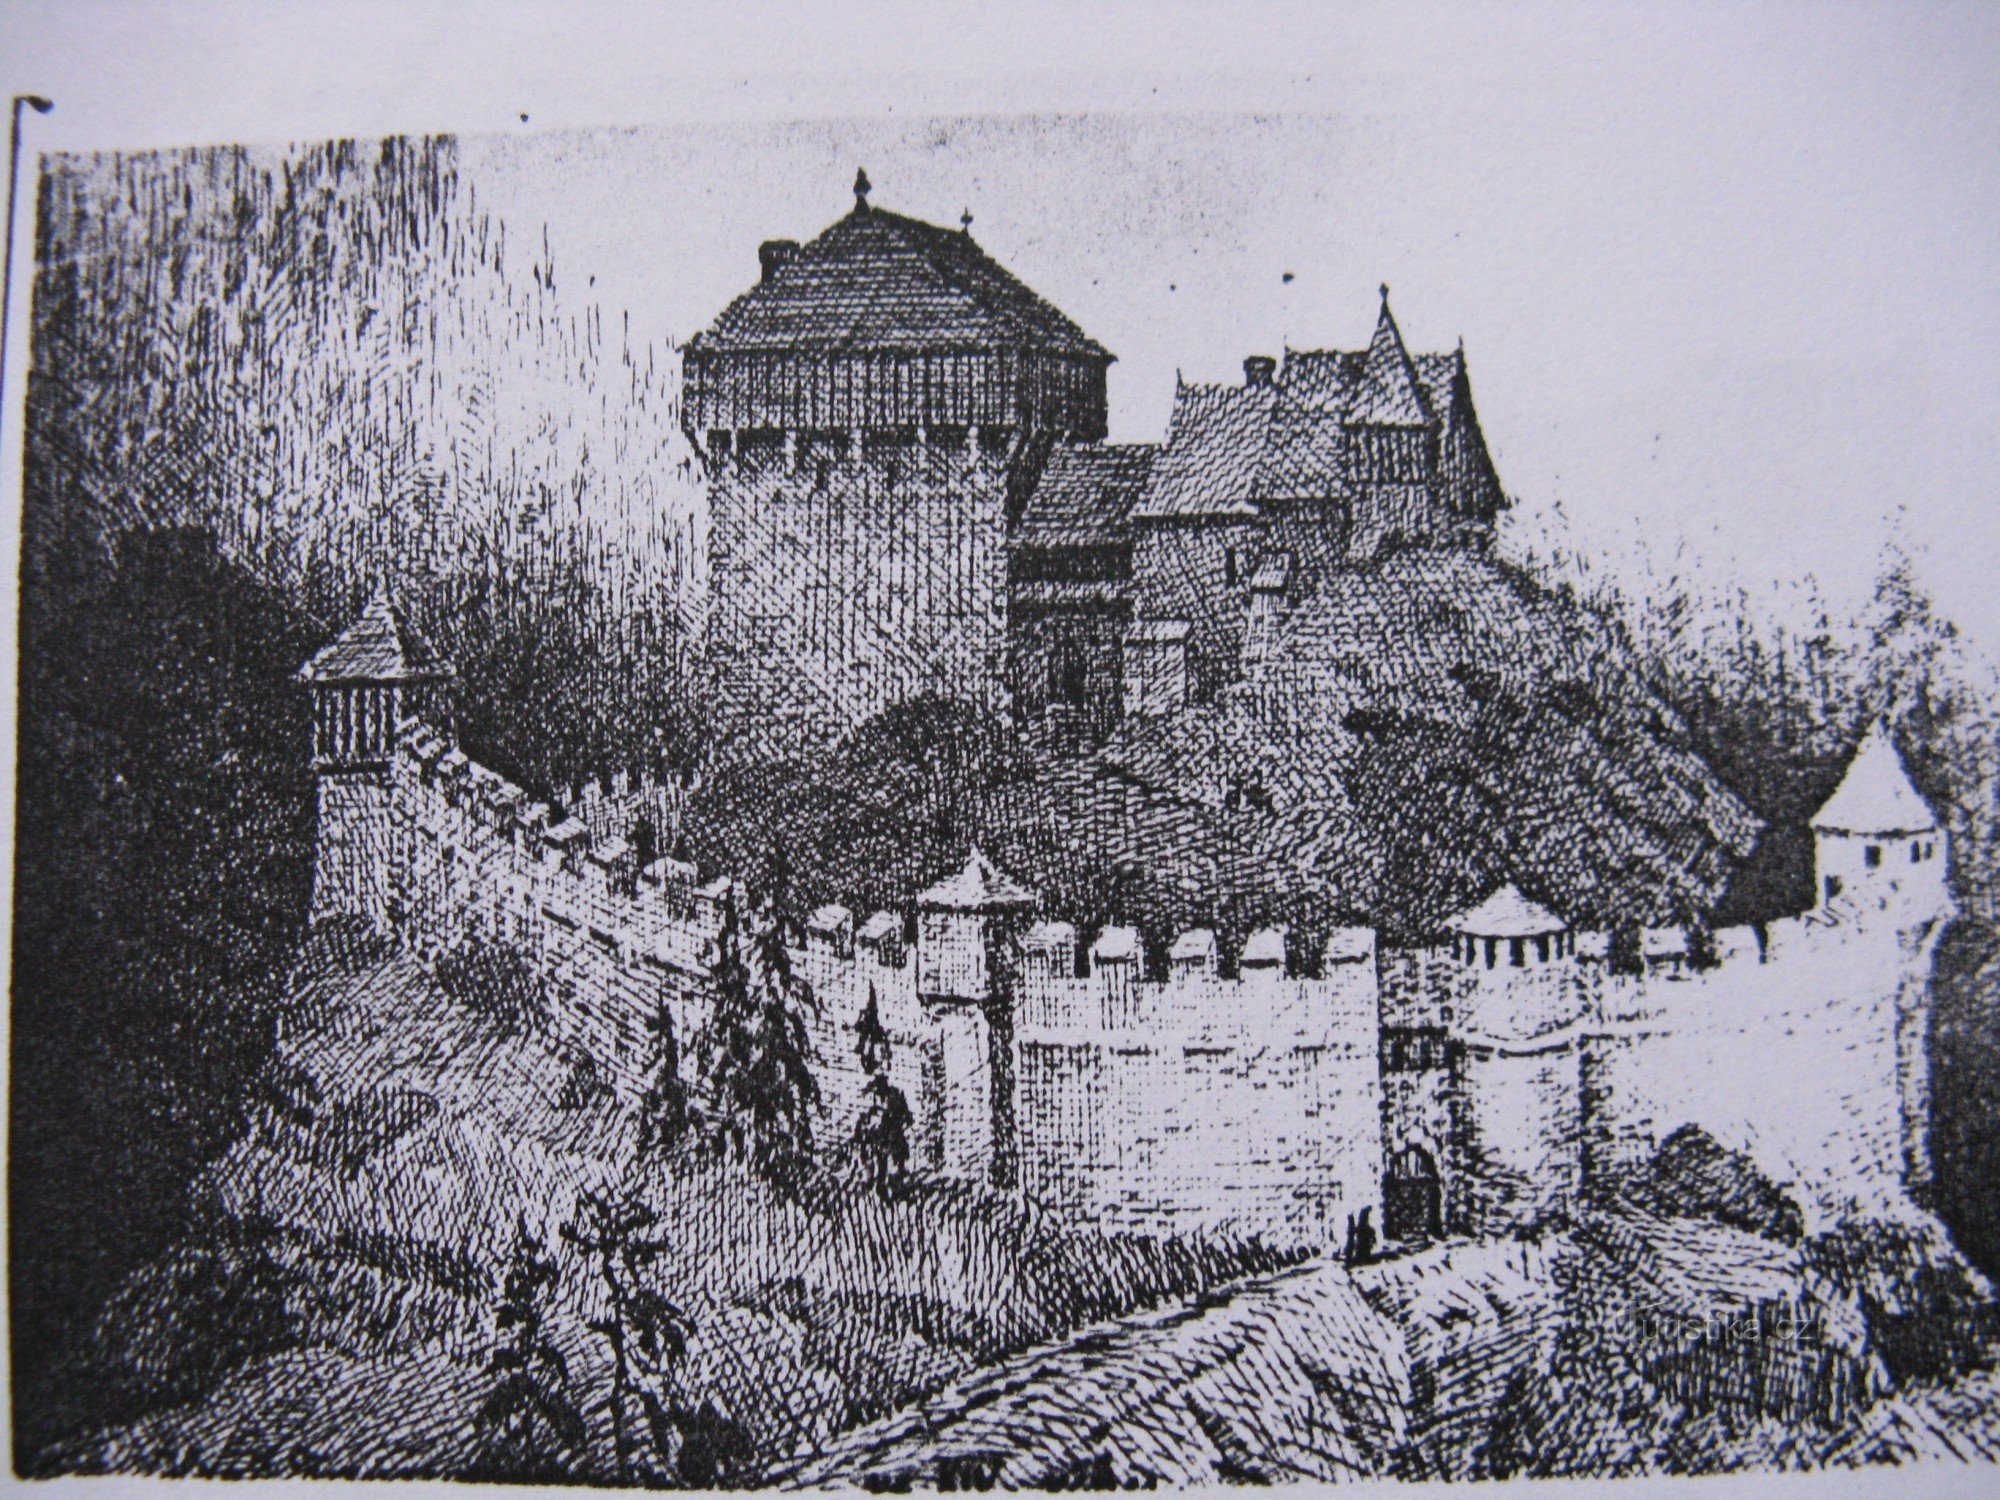 Návarov Castle in its glory days - old postcard